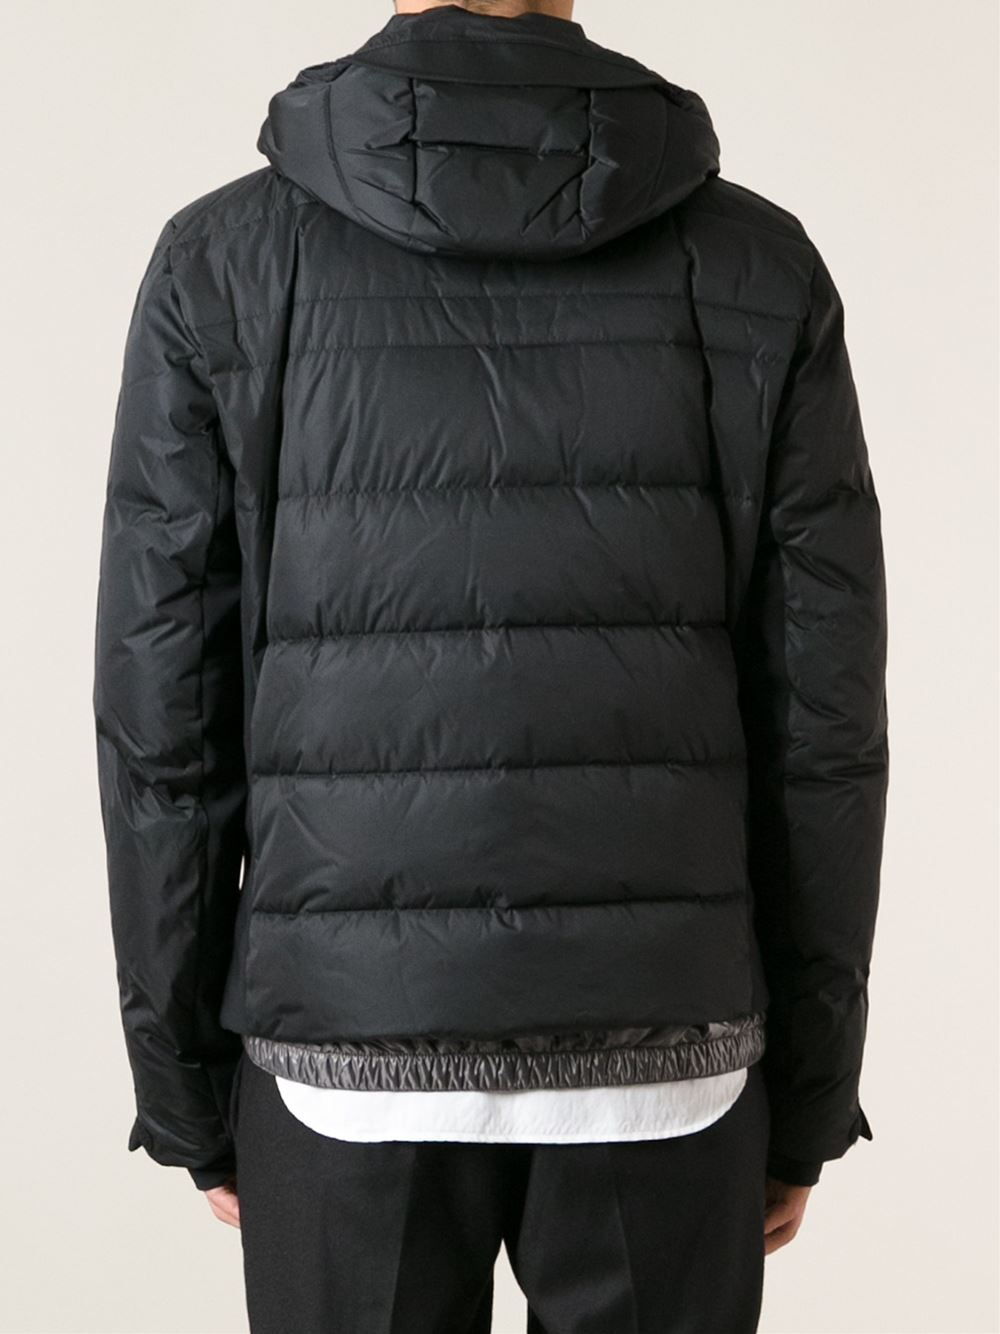 Lyst - Moncler Grenoble Hooded Coat in Black for Men